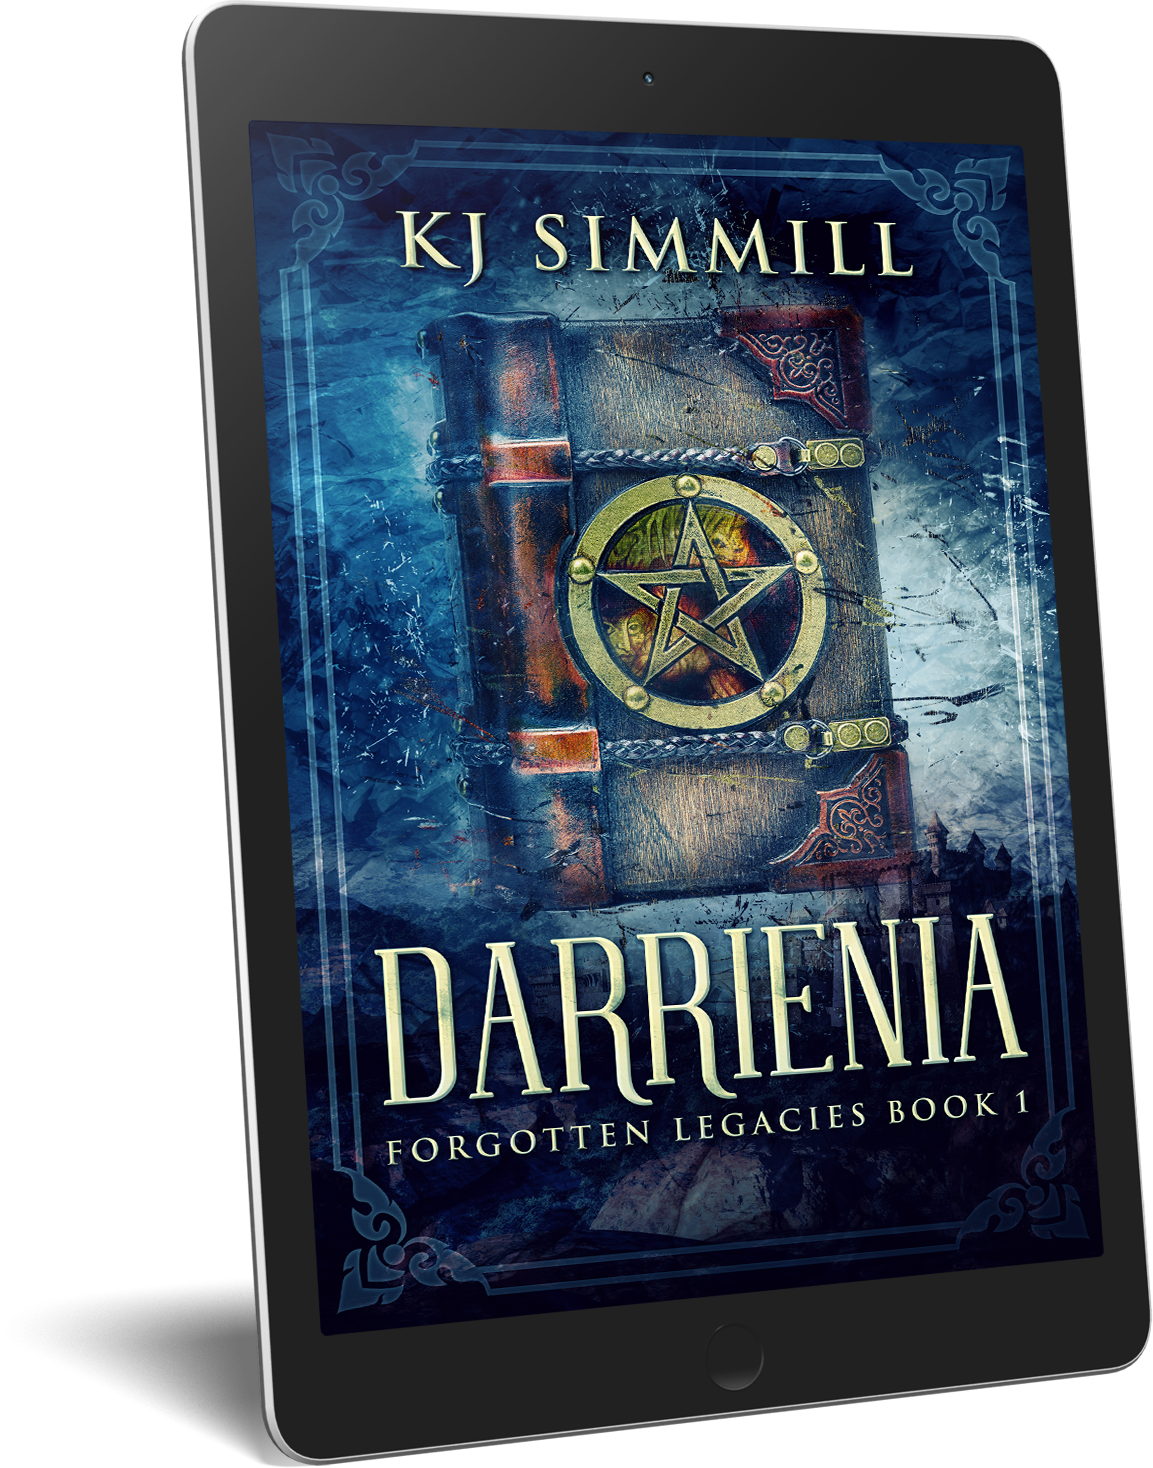 FREE: Darrienia by K.J. Simmill